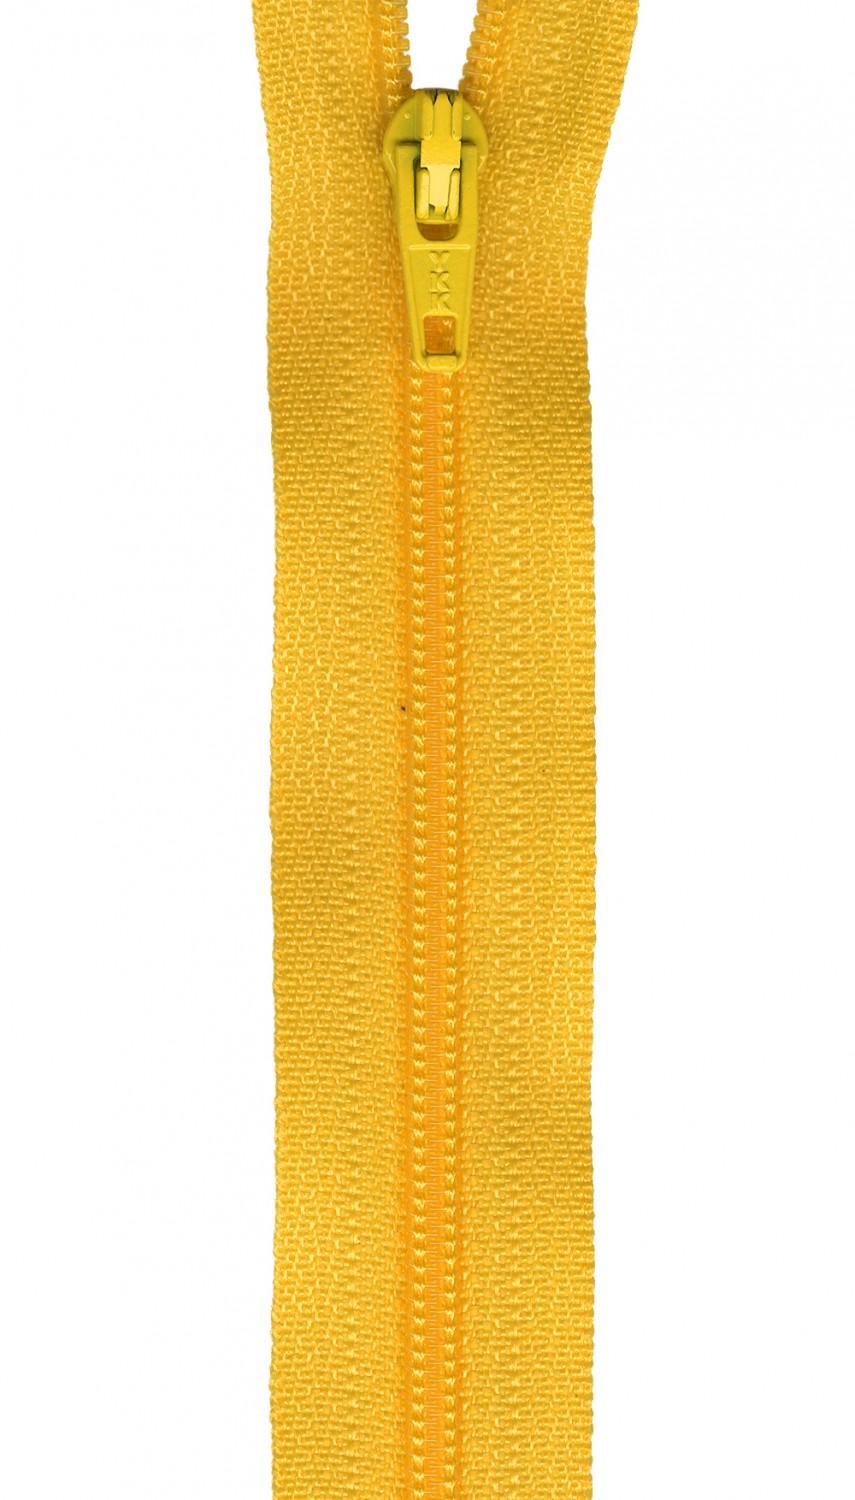 Zipper 14" in Dandelion